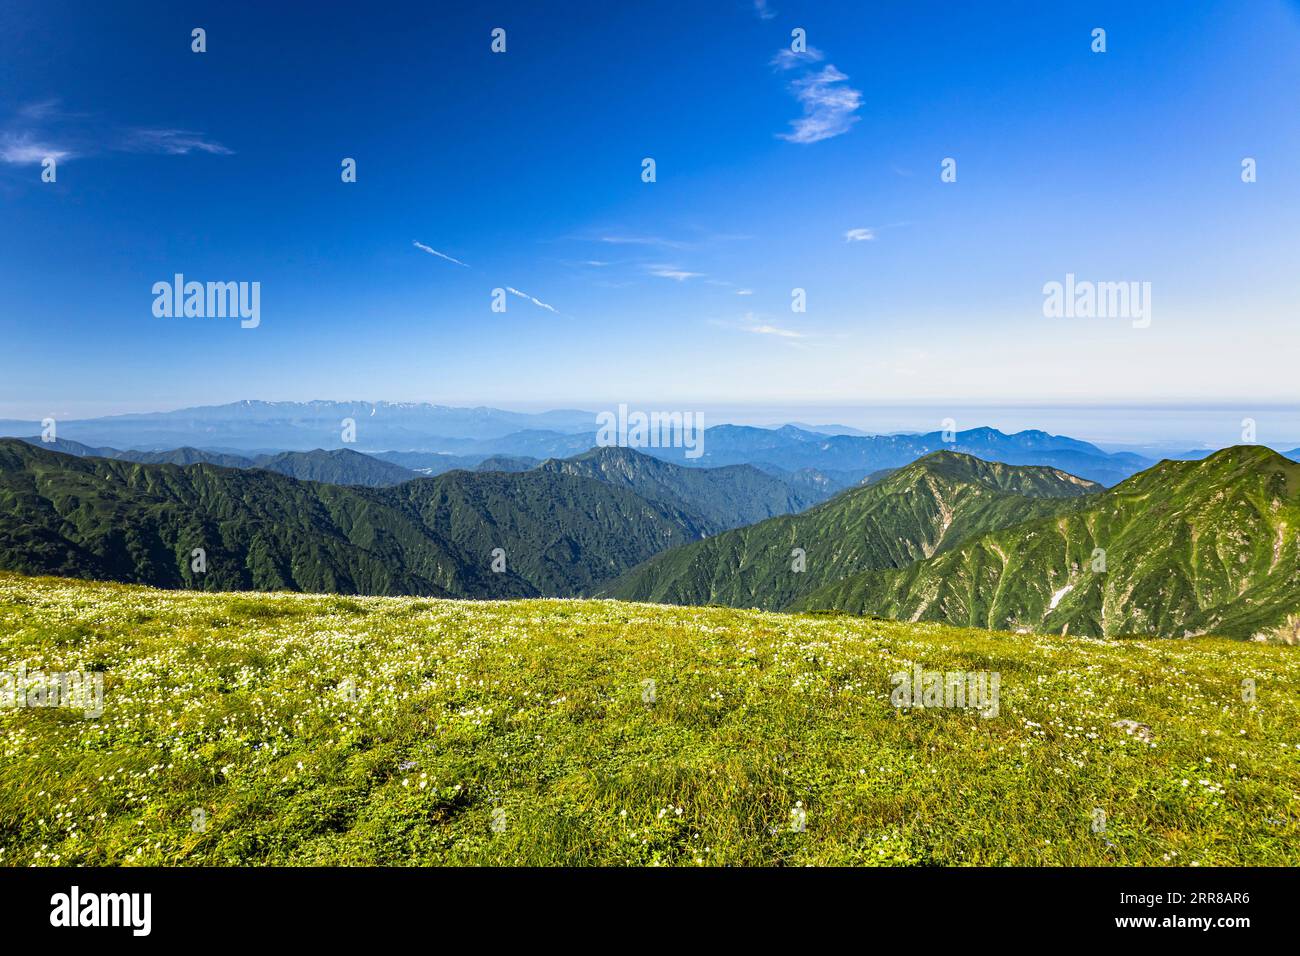 Asahi Mountain Range trekking, vue lointaine de la chaîne de montagnes Iide, jardin de fleurs alpines, 100 montagnes du Japon, Yamagata, Tohoku, Japon, Asie Banque D'Images